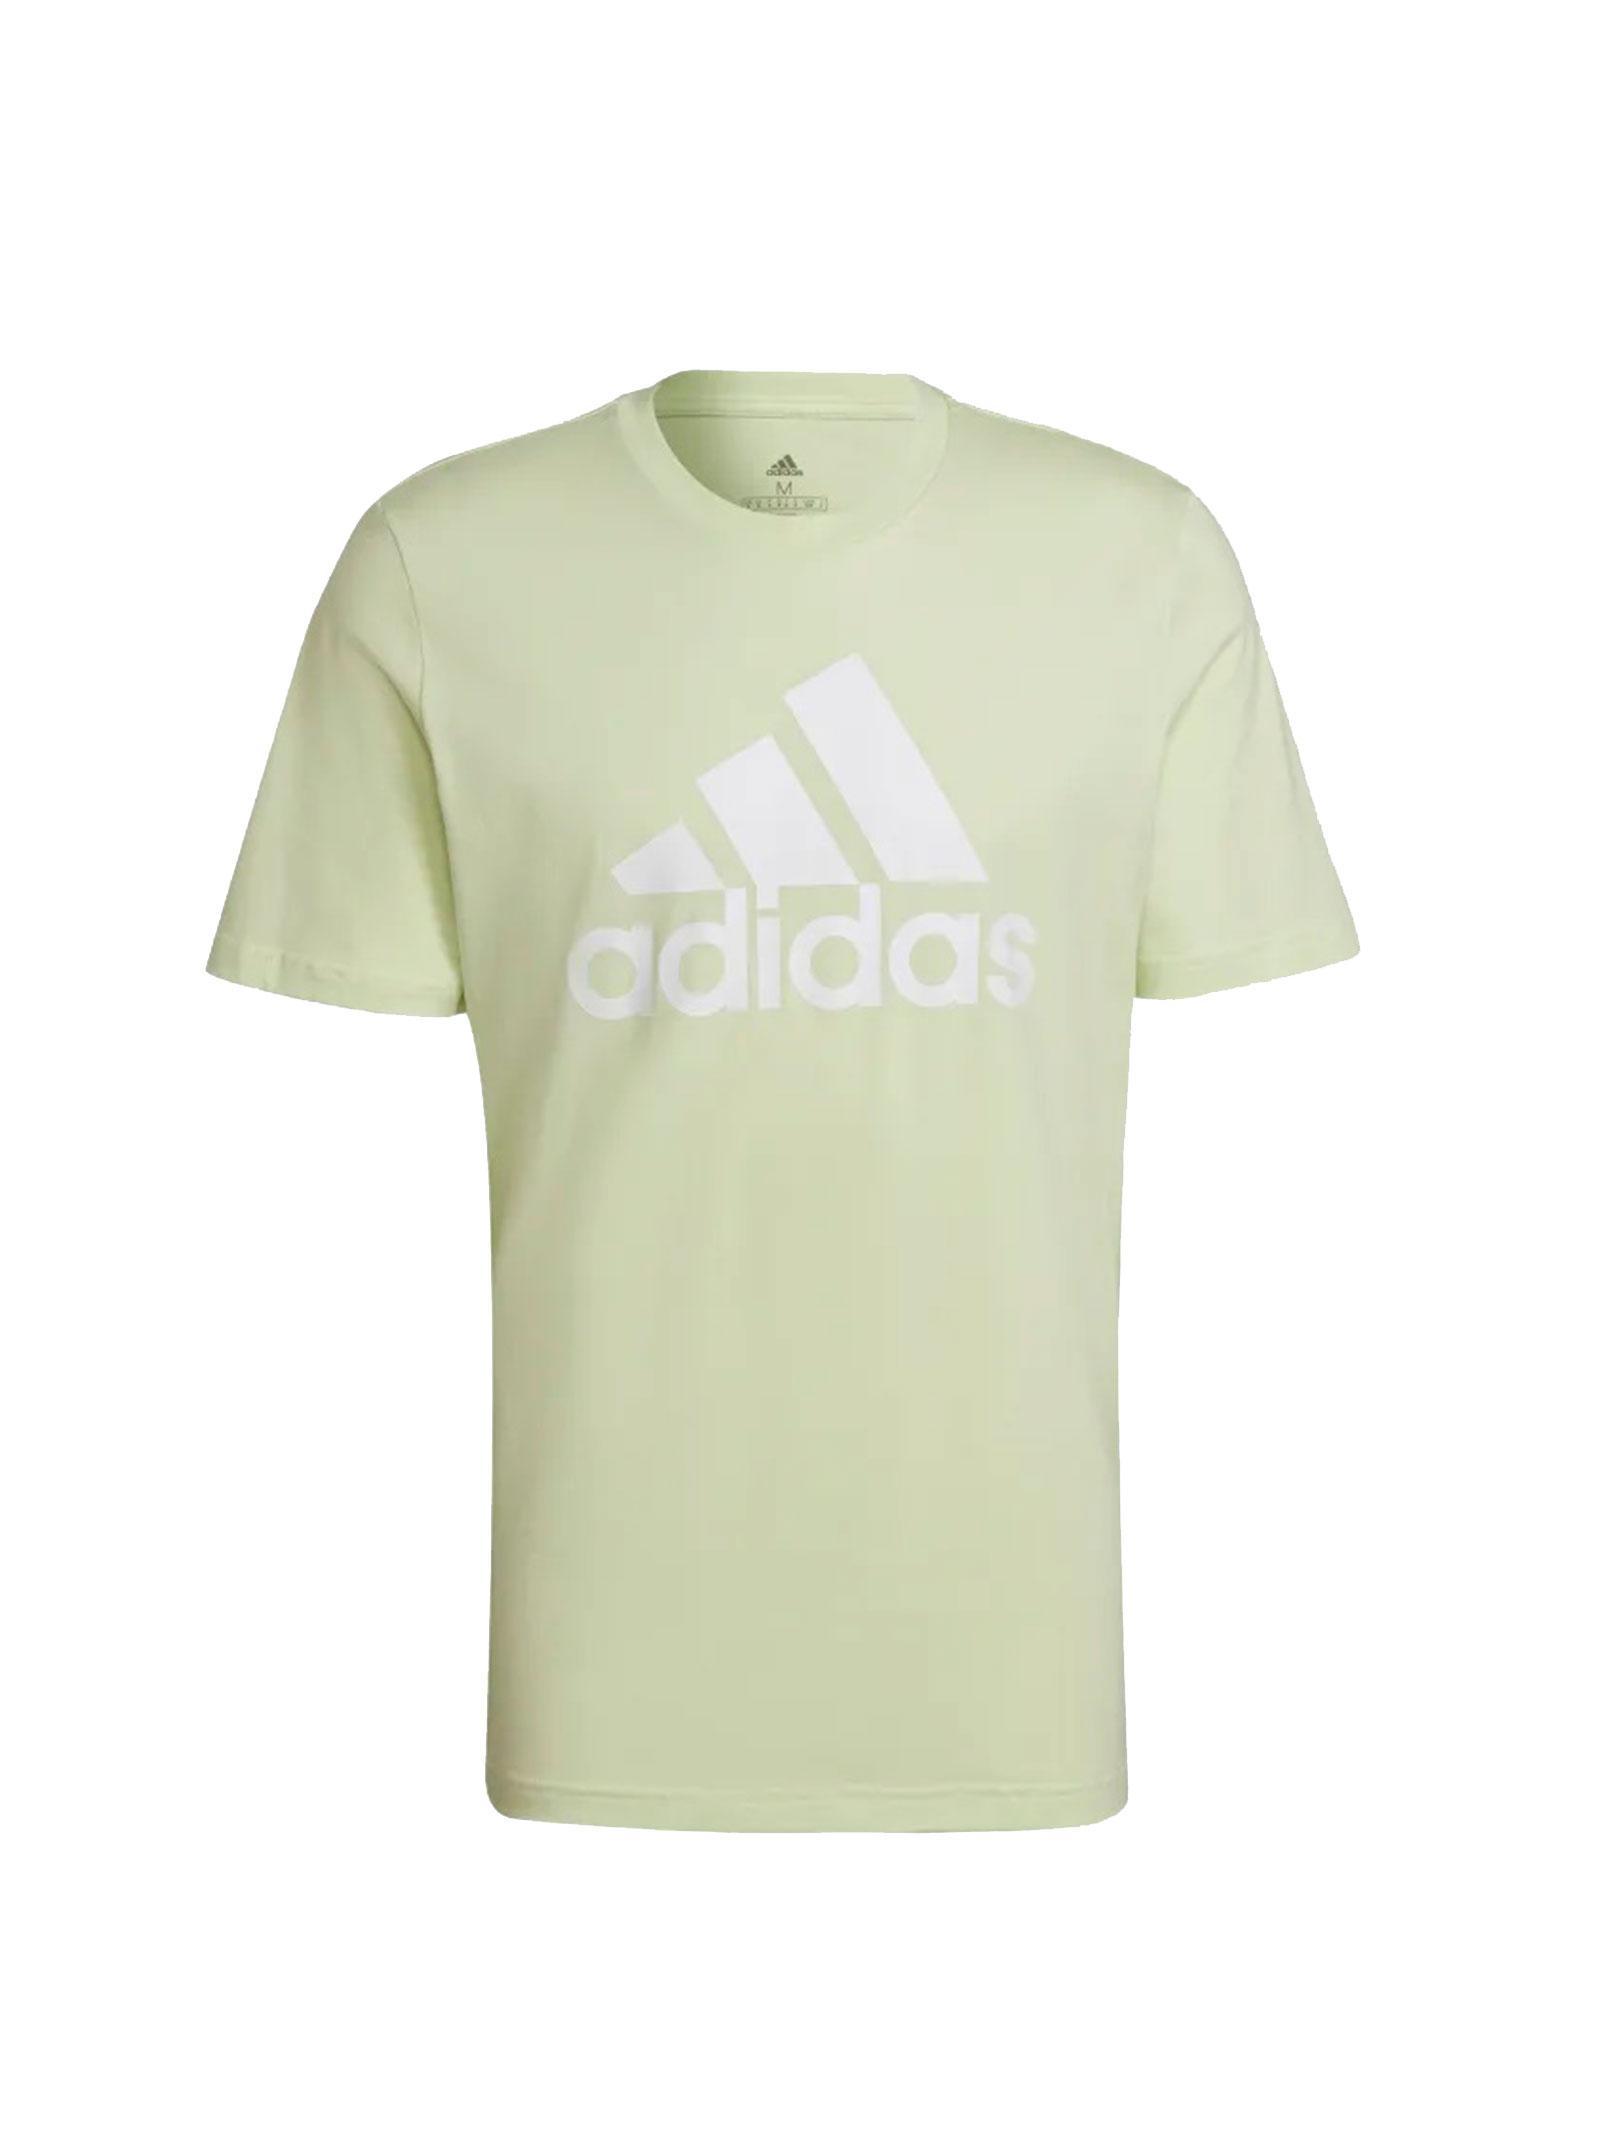 adidas t-shirt adidas he1850. da uomo, colore lime